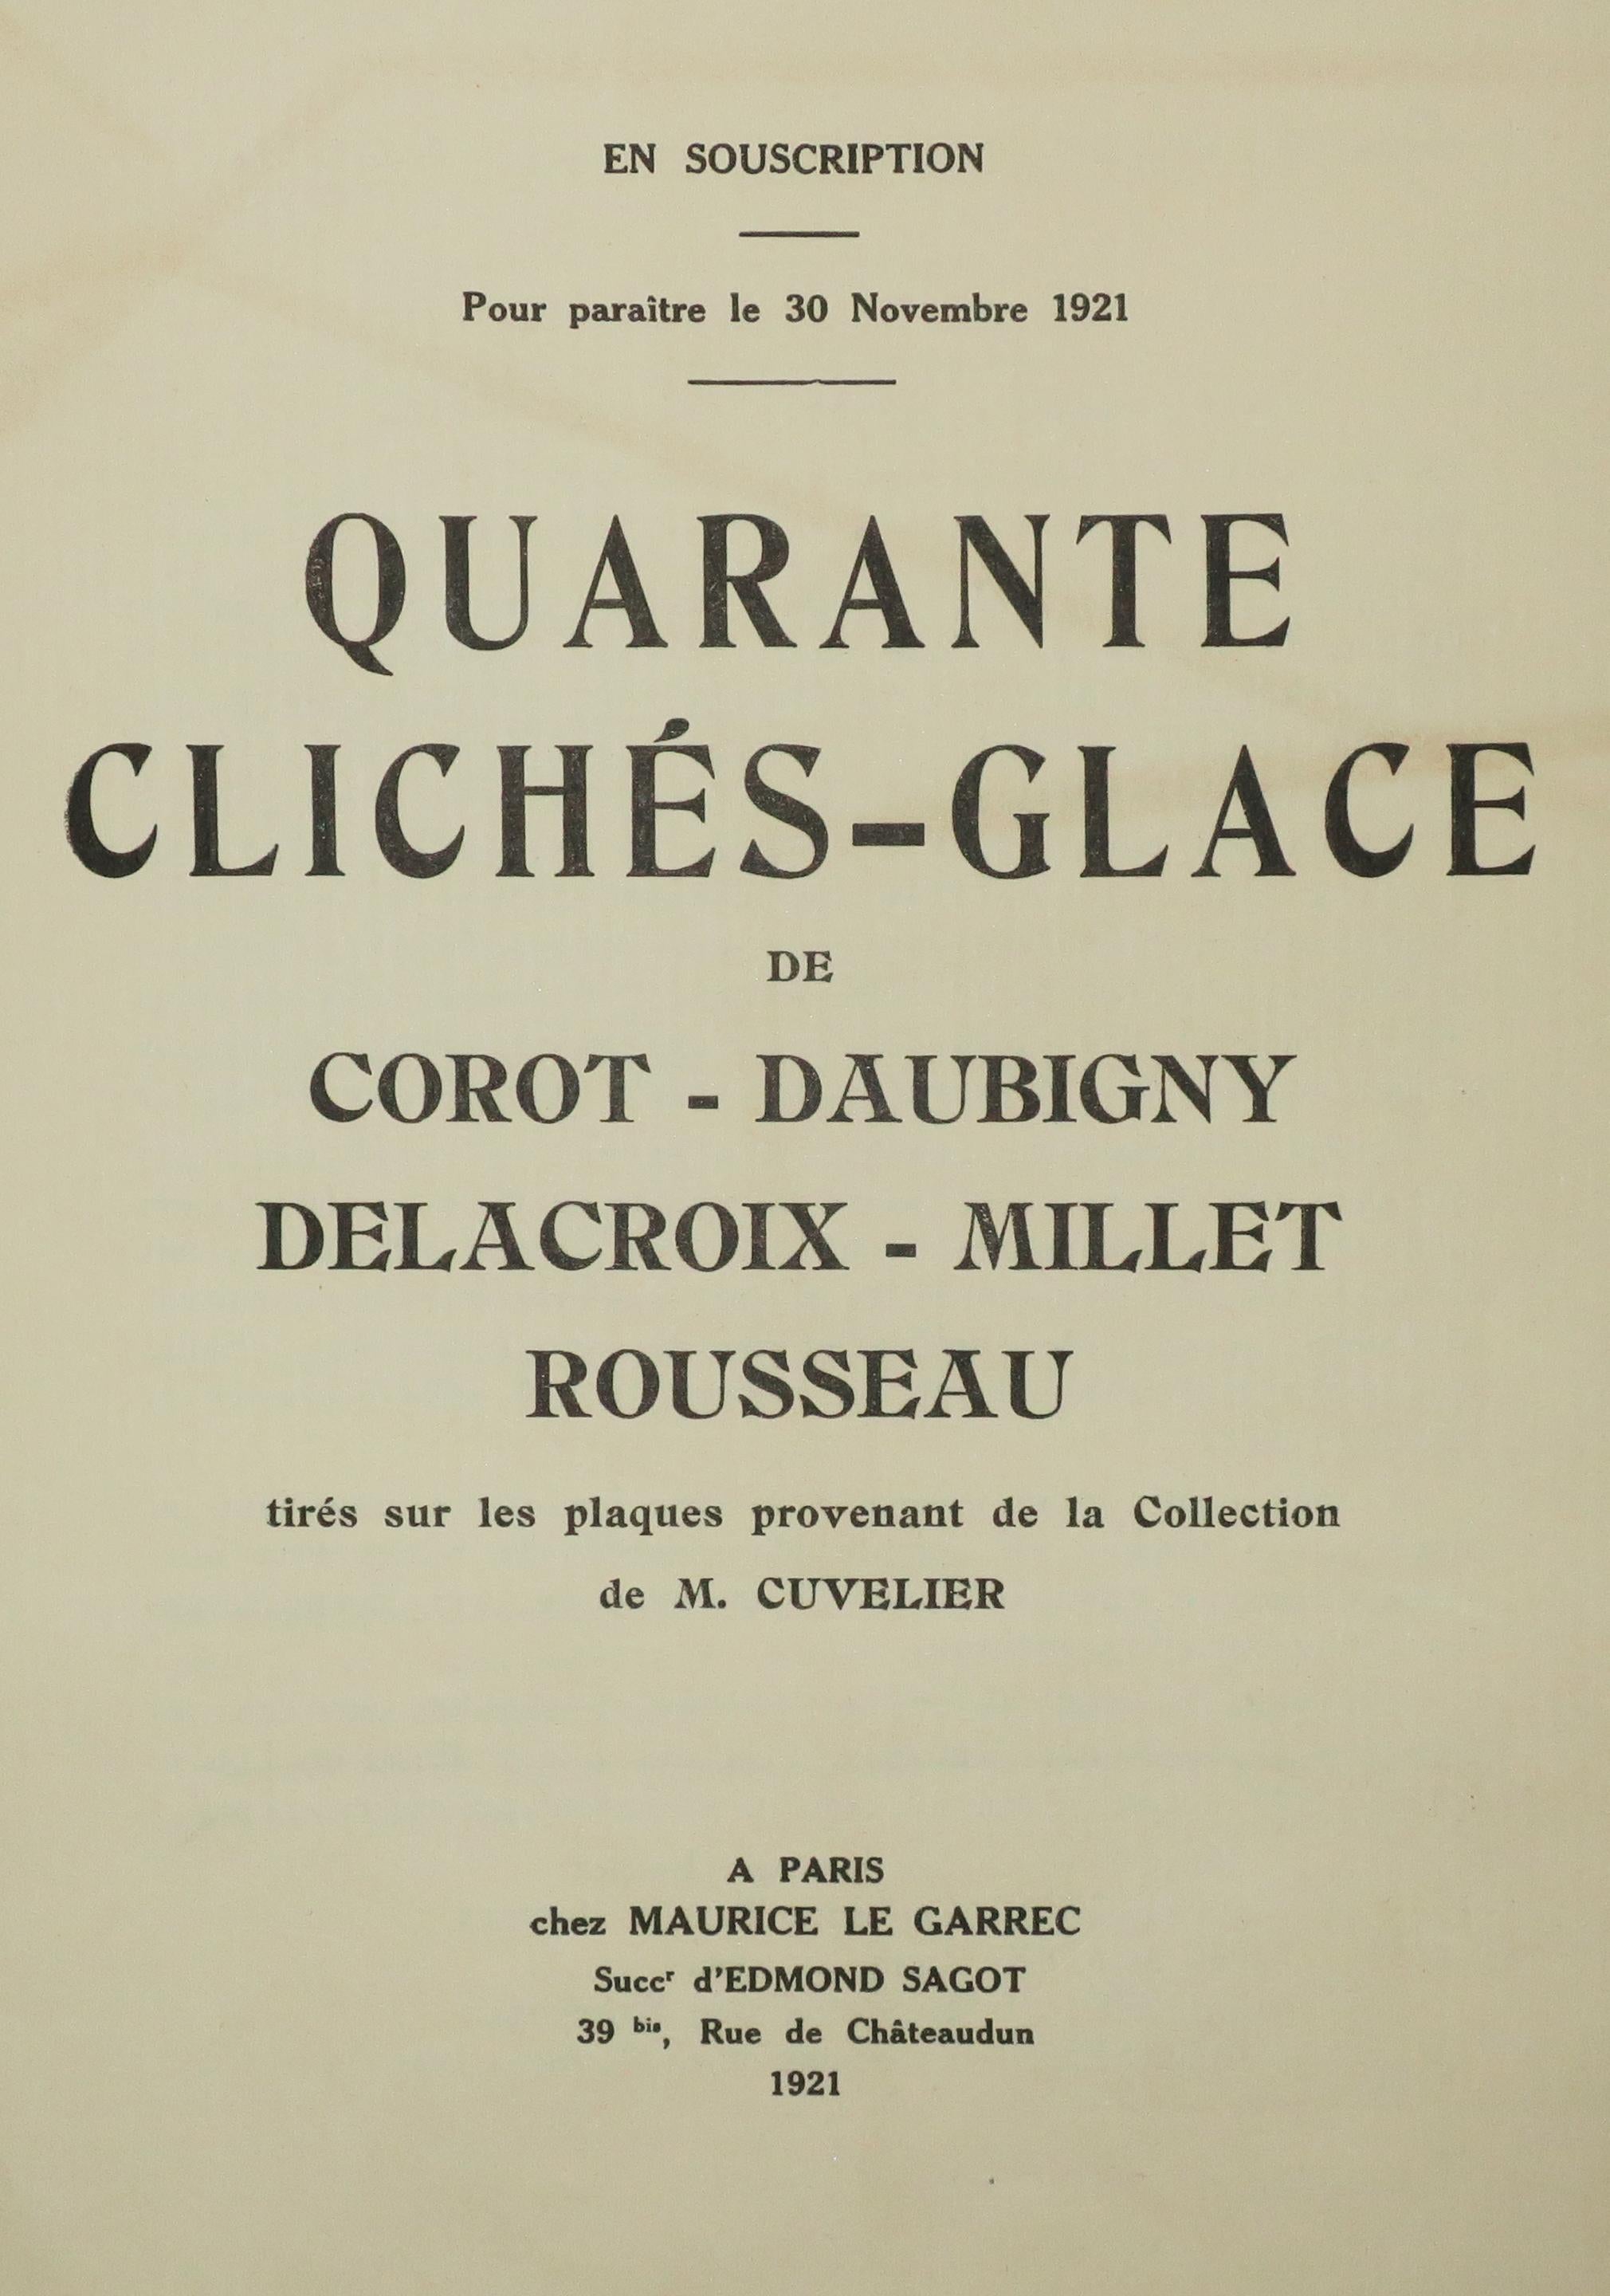 Quarante clichés-glace – Print von Jean-Baptiste-Camille Corot